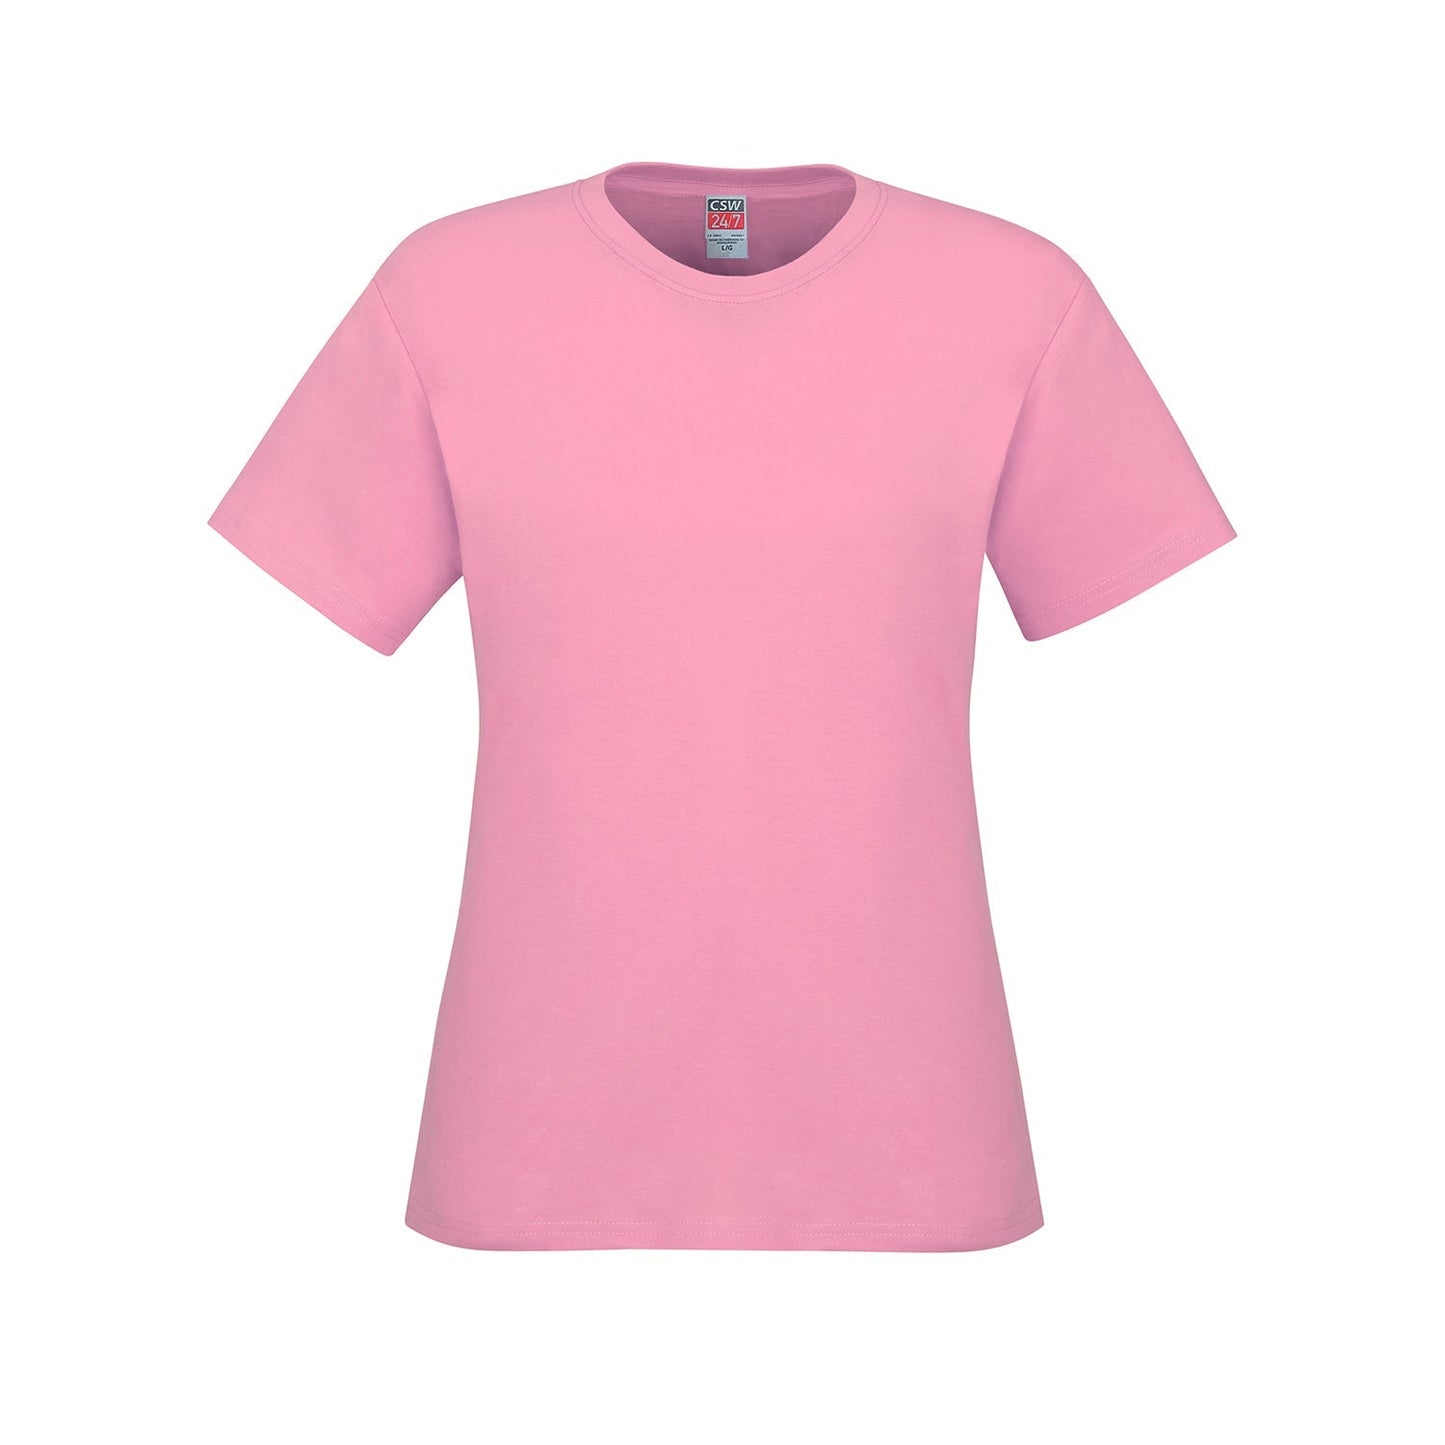 S05611 - Parkour - Ladies Crew Neck Cotton T-Shirt - Pink /